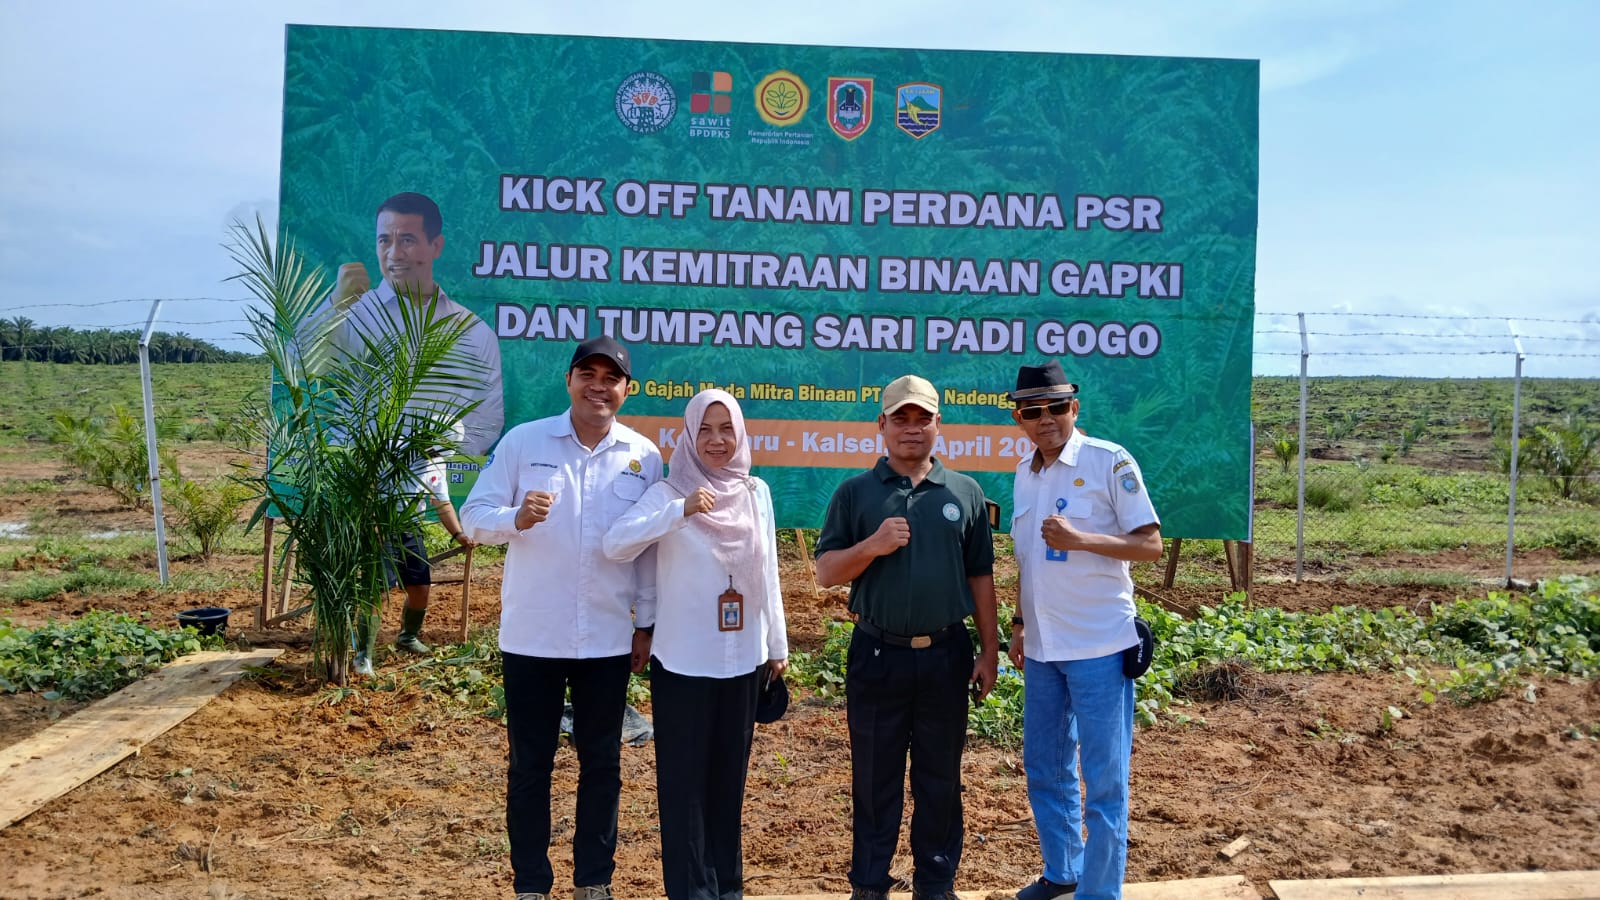 Distan Banjar Hadiri Kick Off Tanam Perdana PSR dan Tumpang Sari Padi Gogo di Kotabaru